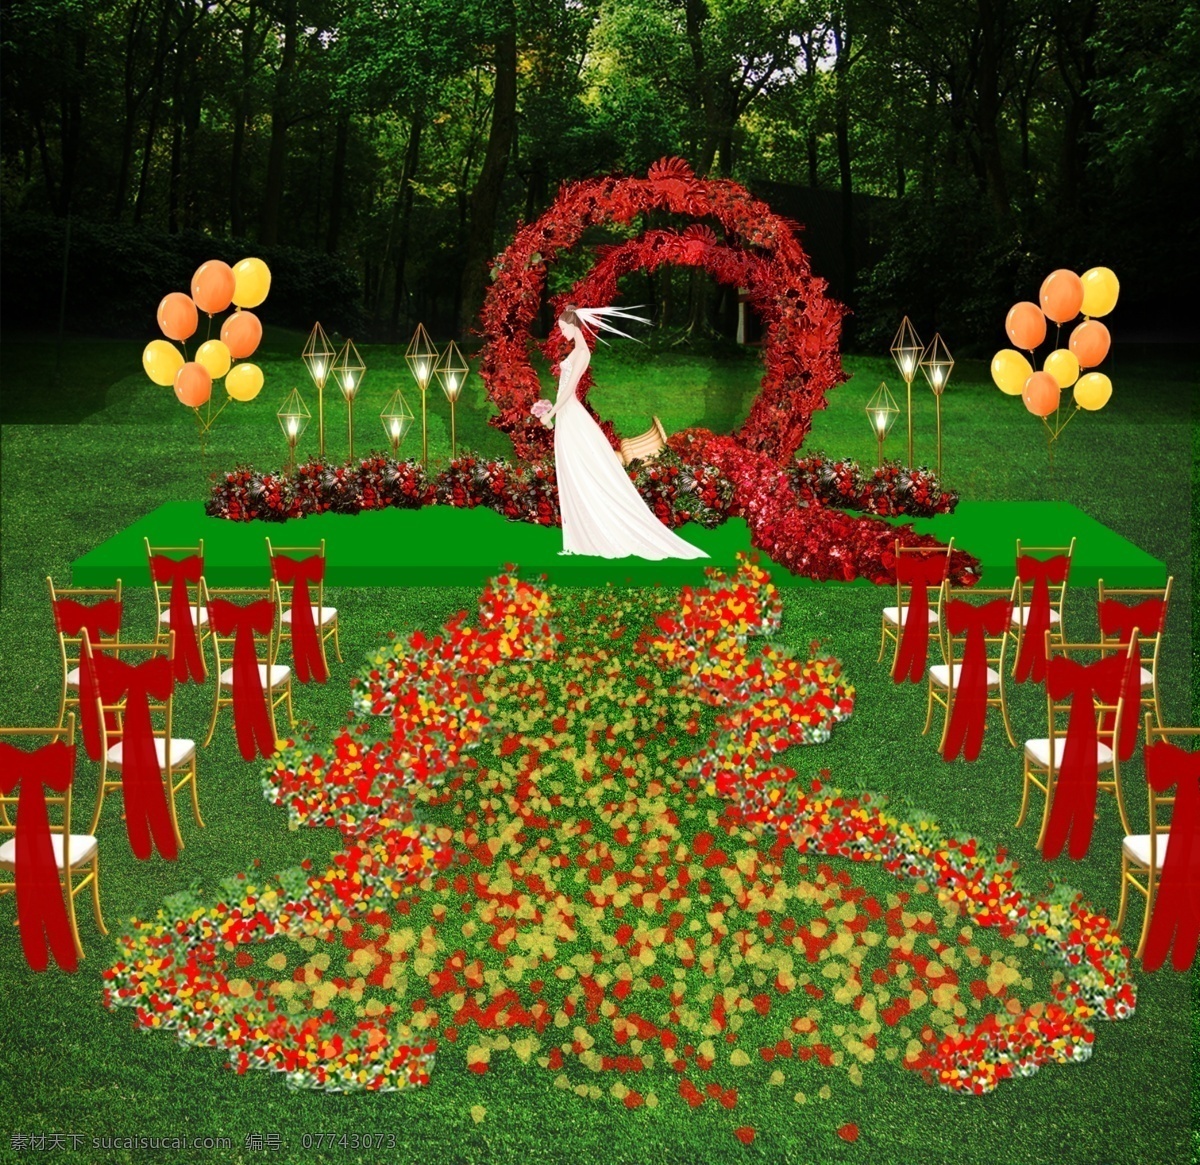 户外 婚礼 效果图 红绿 户外婚礼 竹节椅 气球